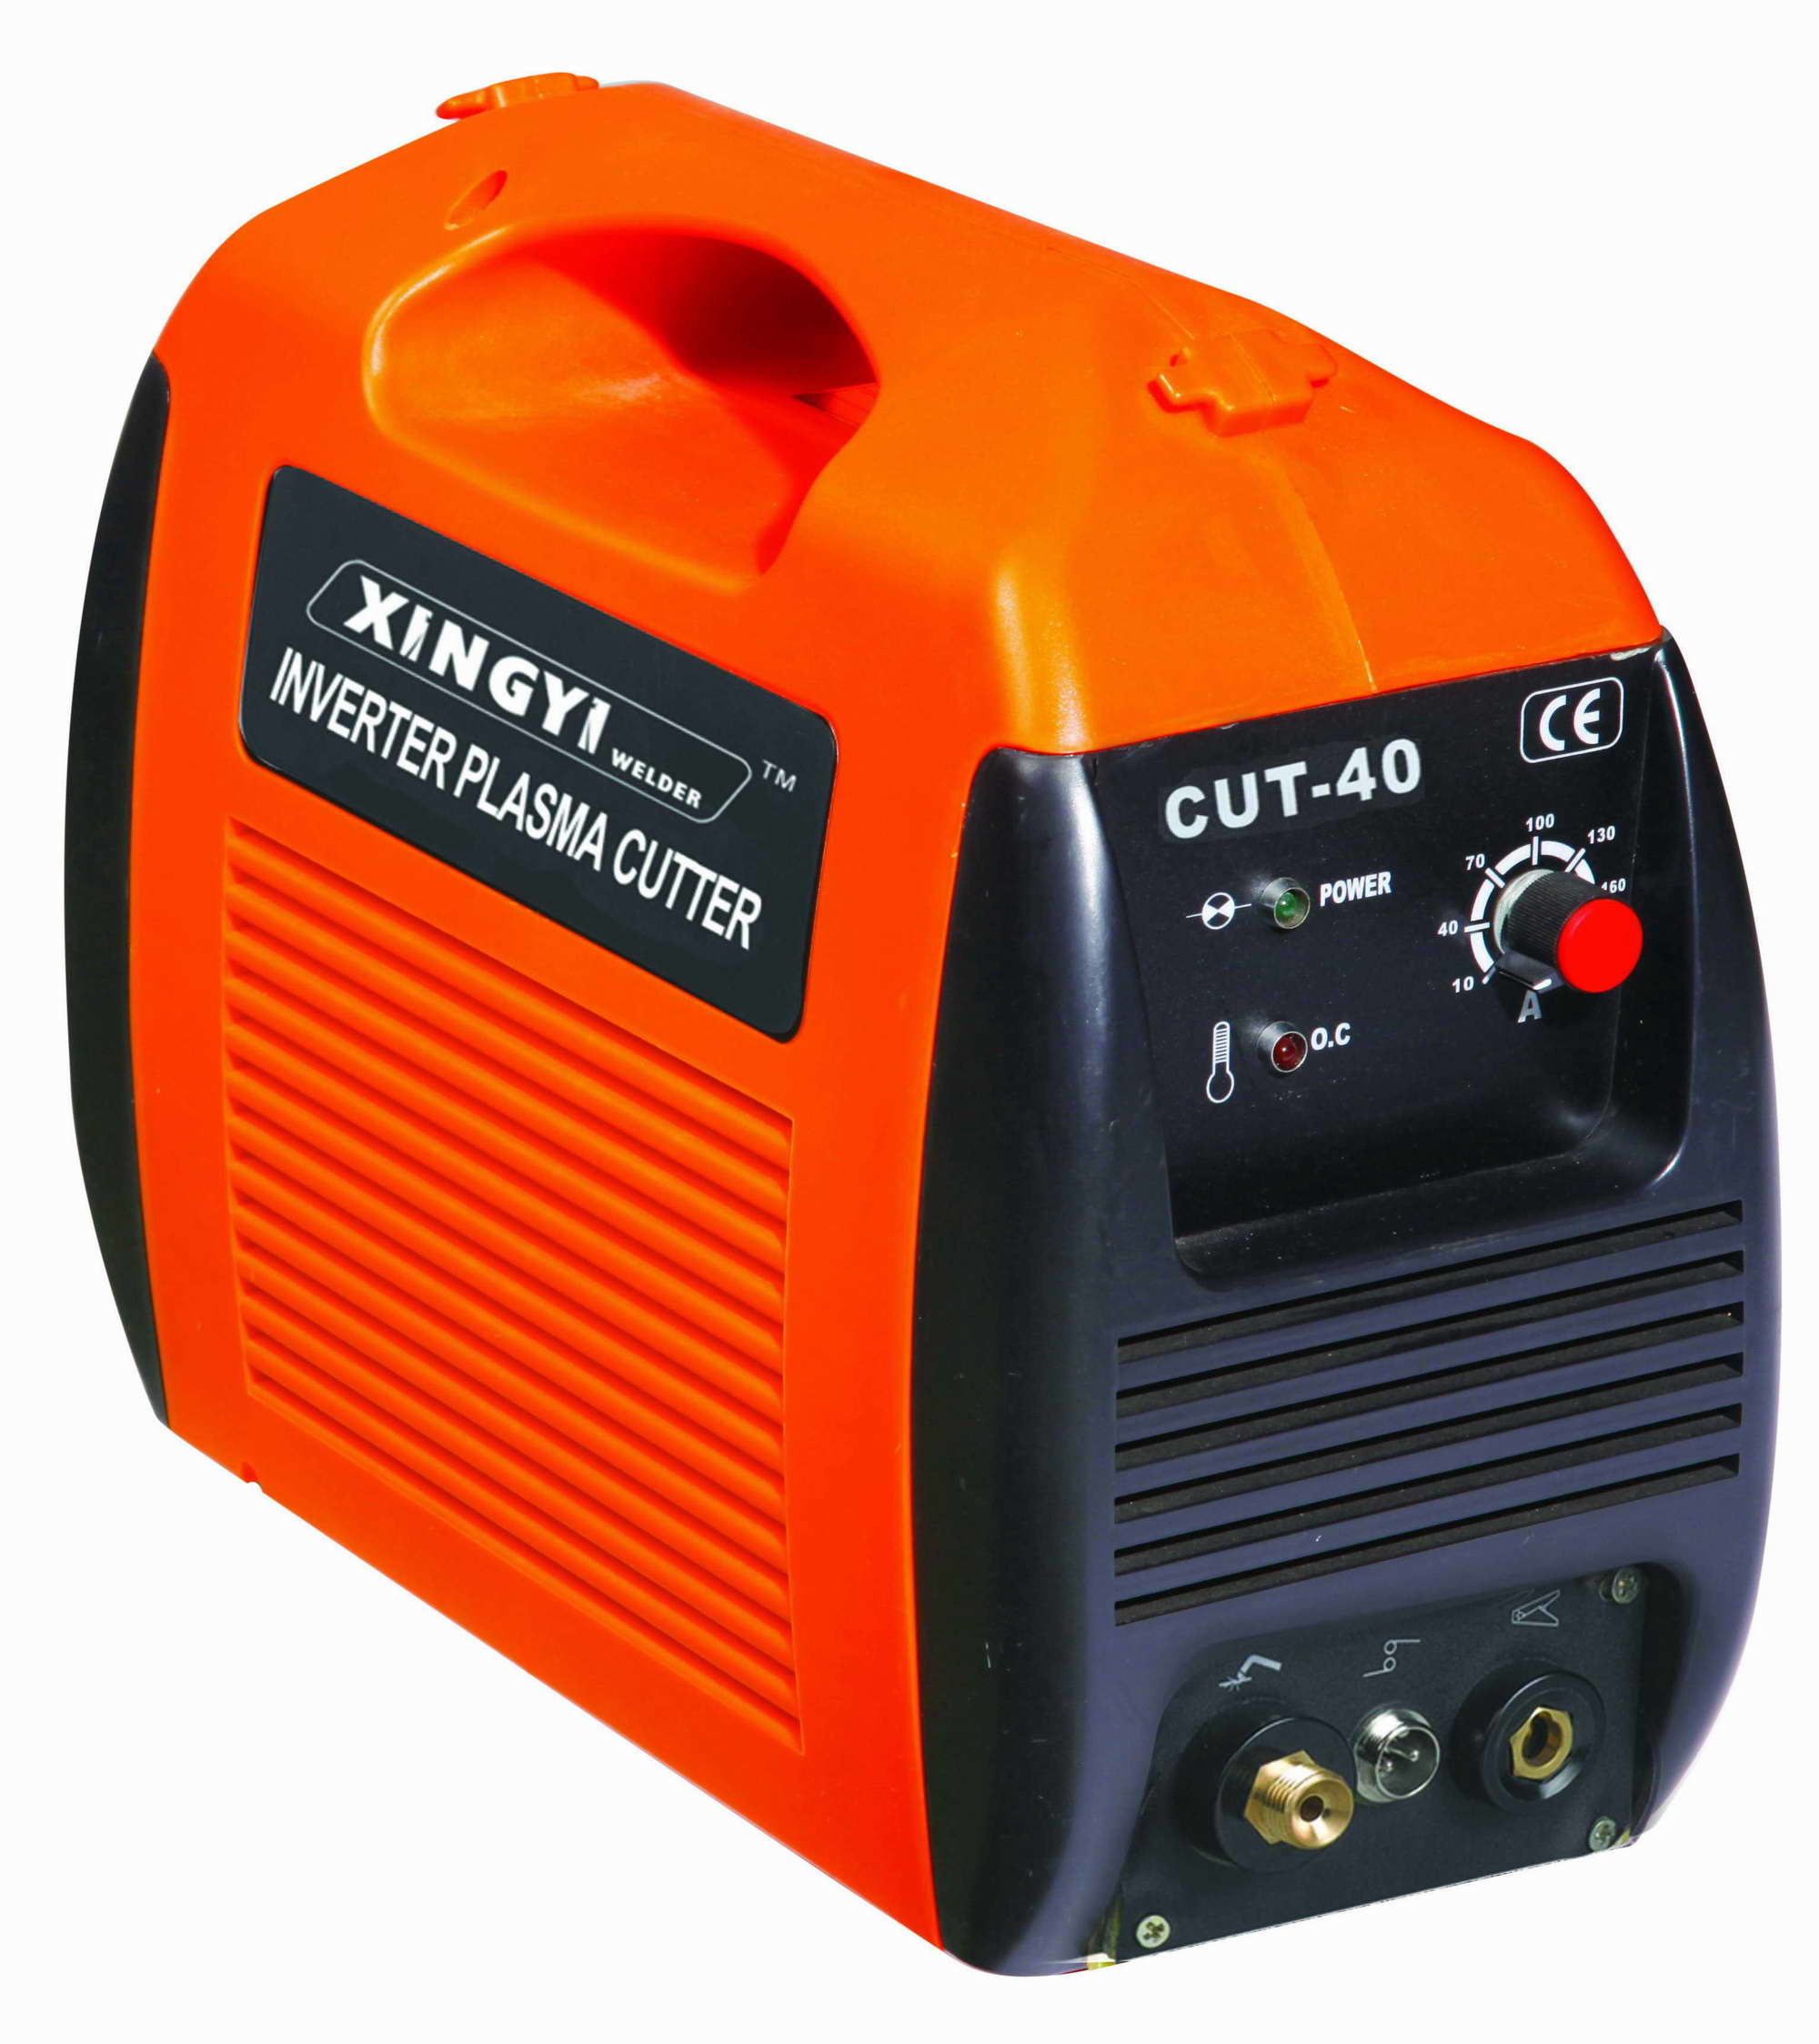 Inverter Plasma Cutter (CUT-40)